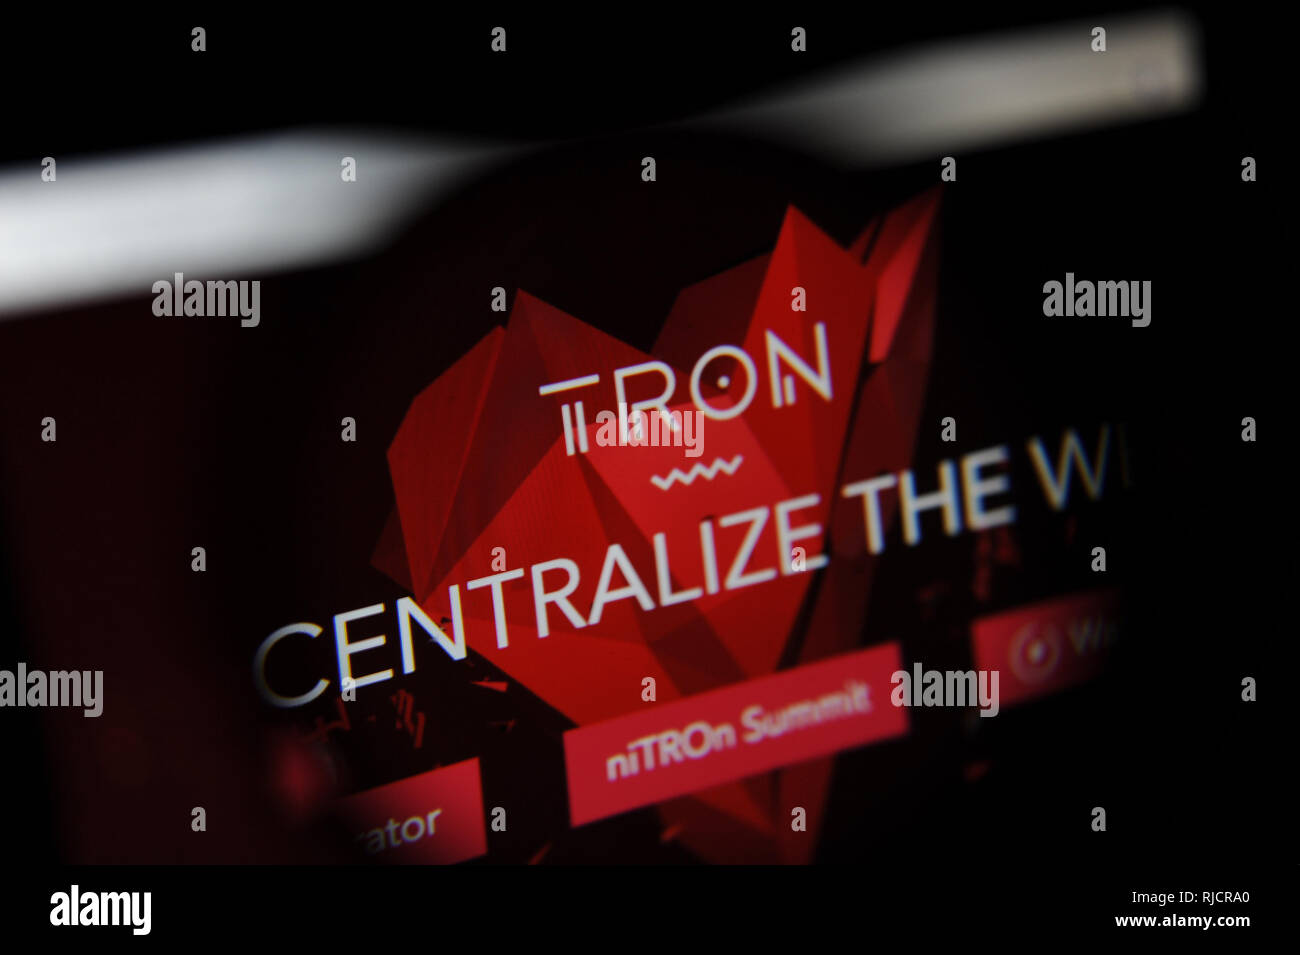 Tron cryptocurreny sito visto sullo schermo di un computer Foto Stock